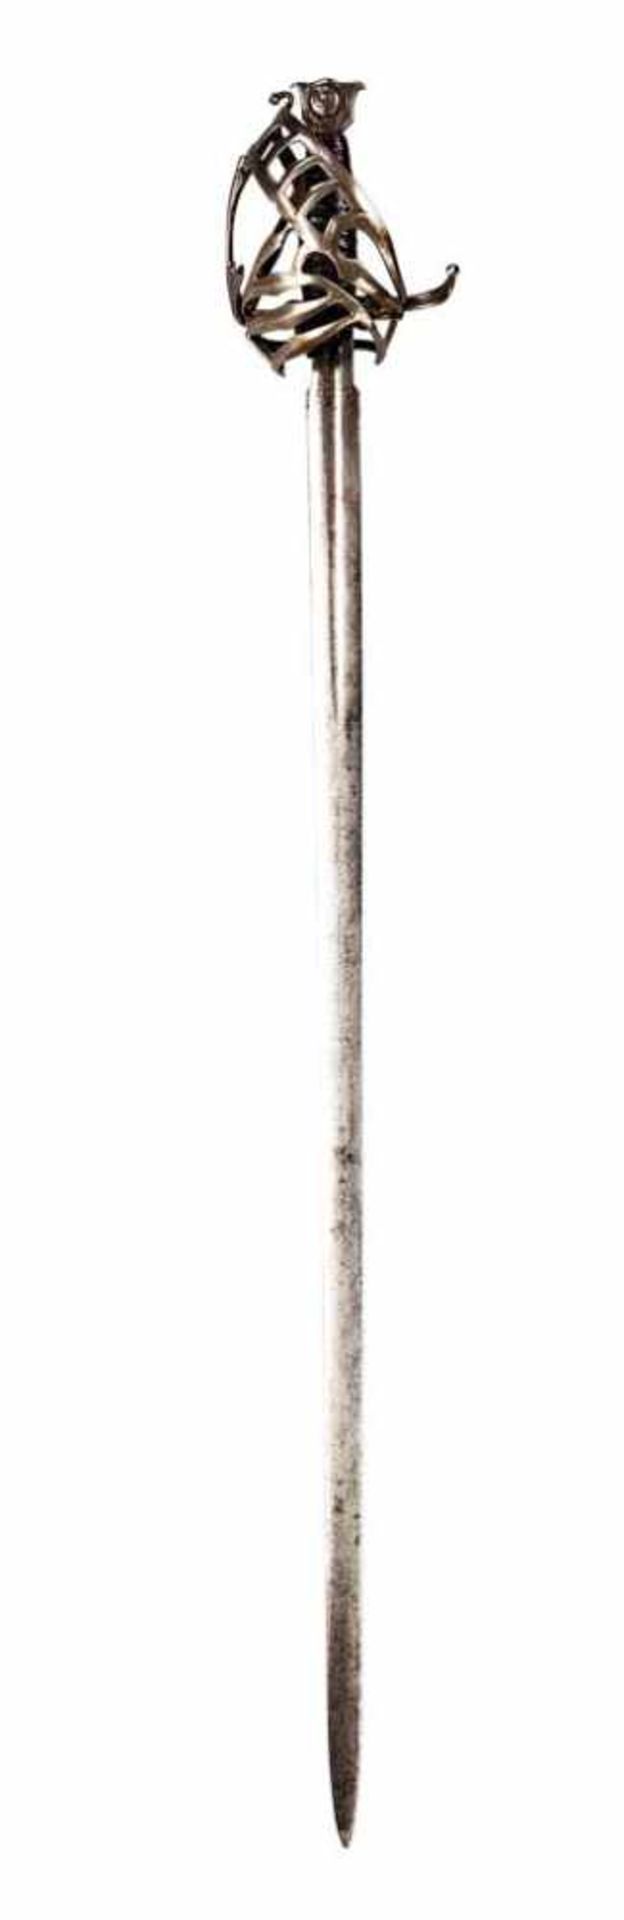 Schiavona mit gerader zweischneidiger Klinge; in der kurzen Kehlung Marke und in Kupfer